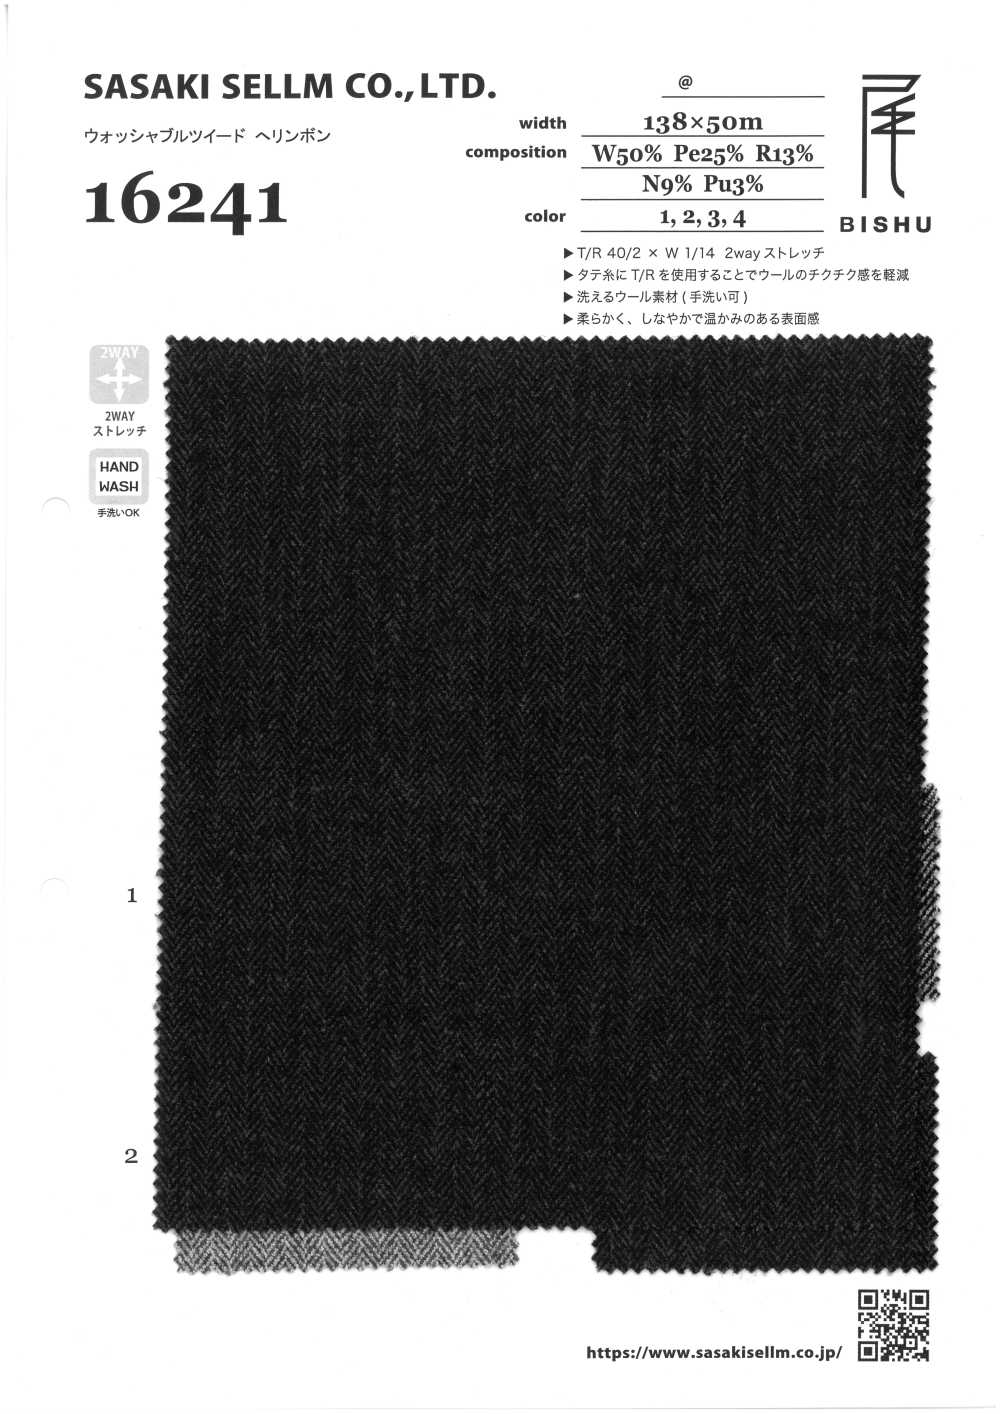 16241-1 Waschbares Tweed 2WAY Fischgrätmuster[Textilgewebe] SASAKISELLM